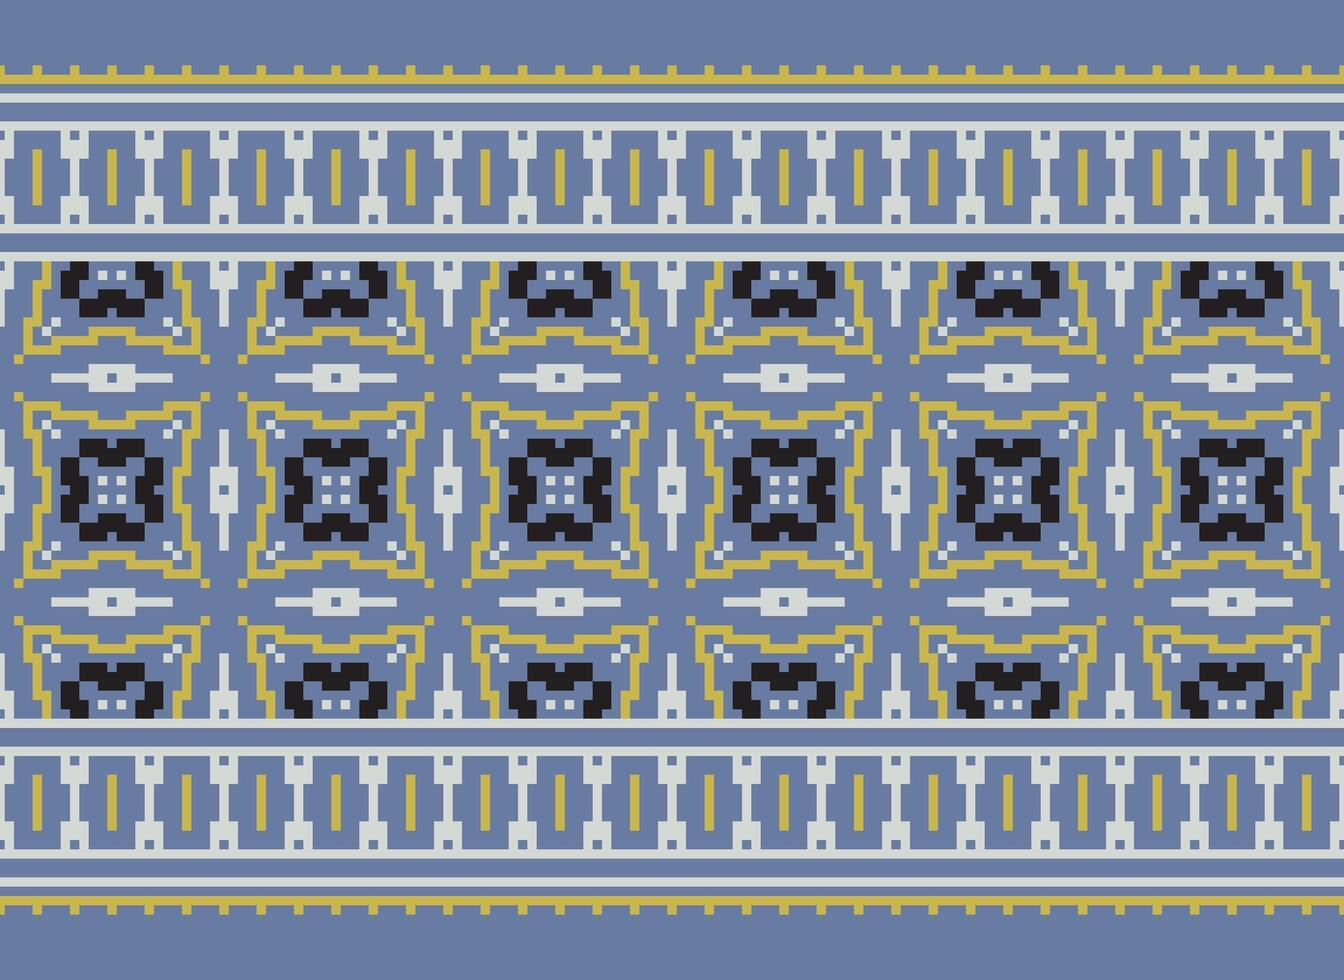 zmijanjski vez borduurwerk stijl vector lang horizontaal naadloos patroon - textiel of kleding stof afdrukken geïnspireerd door kruissteek volk kunst ontwerpen van Bosnië en herzegovina